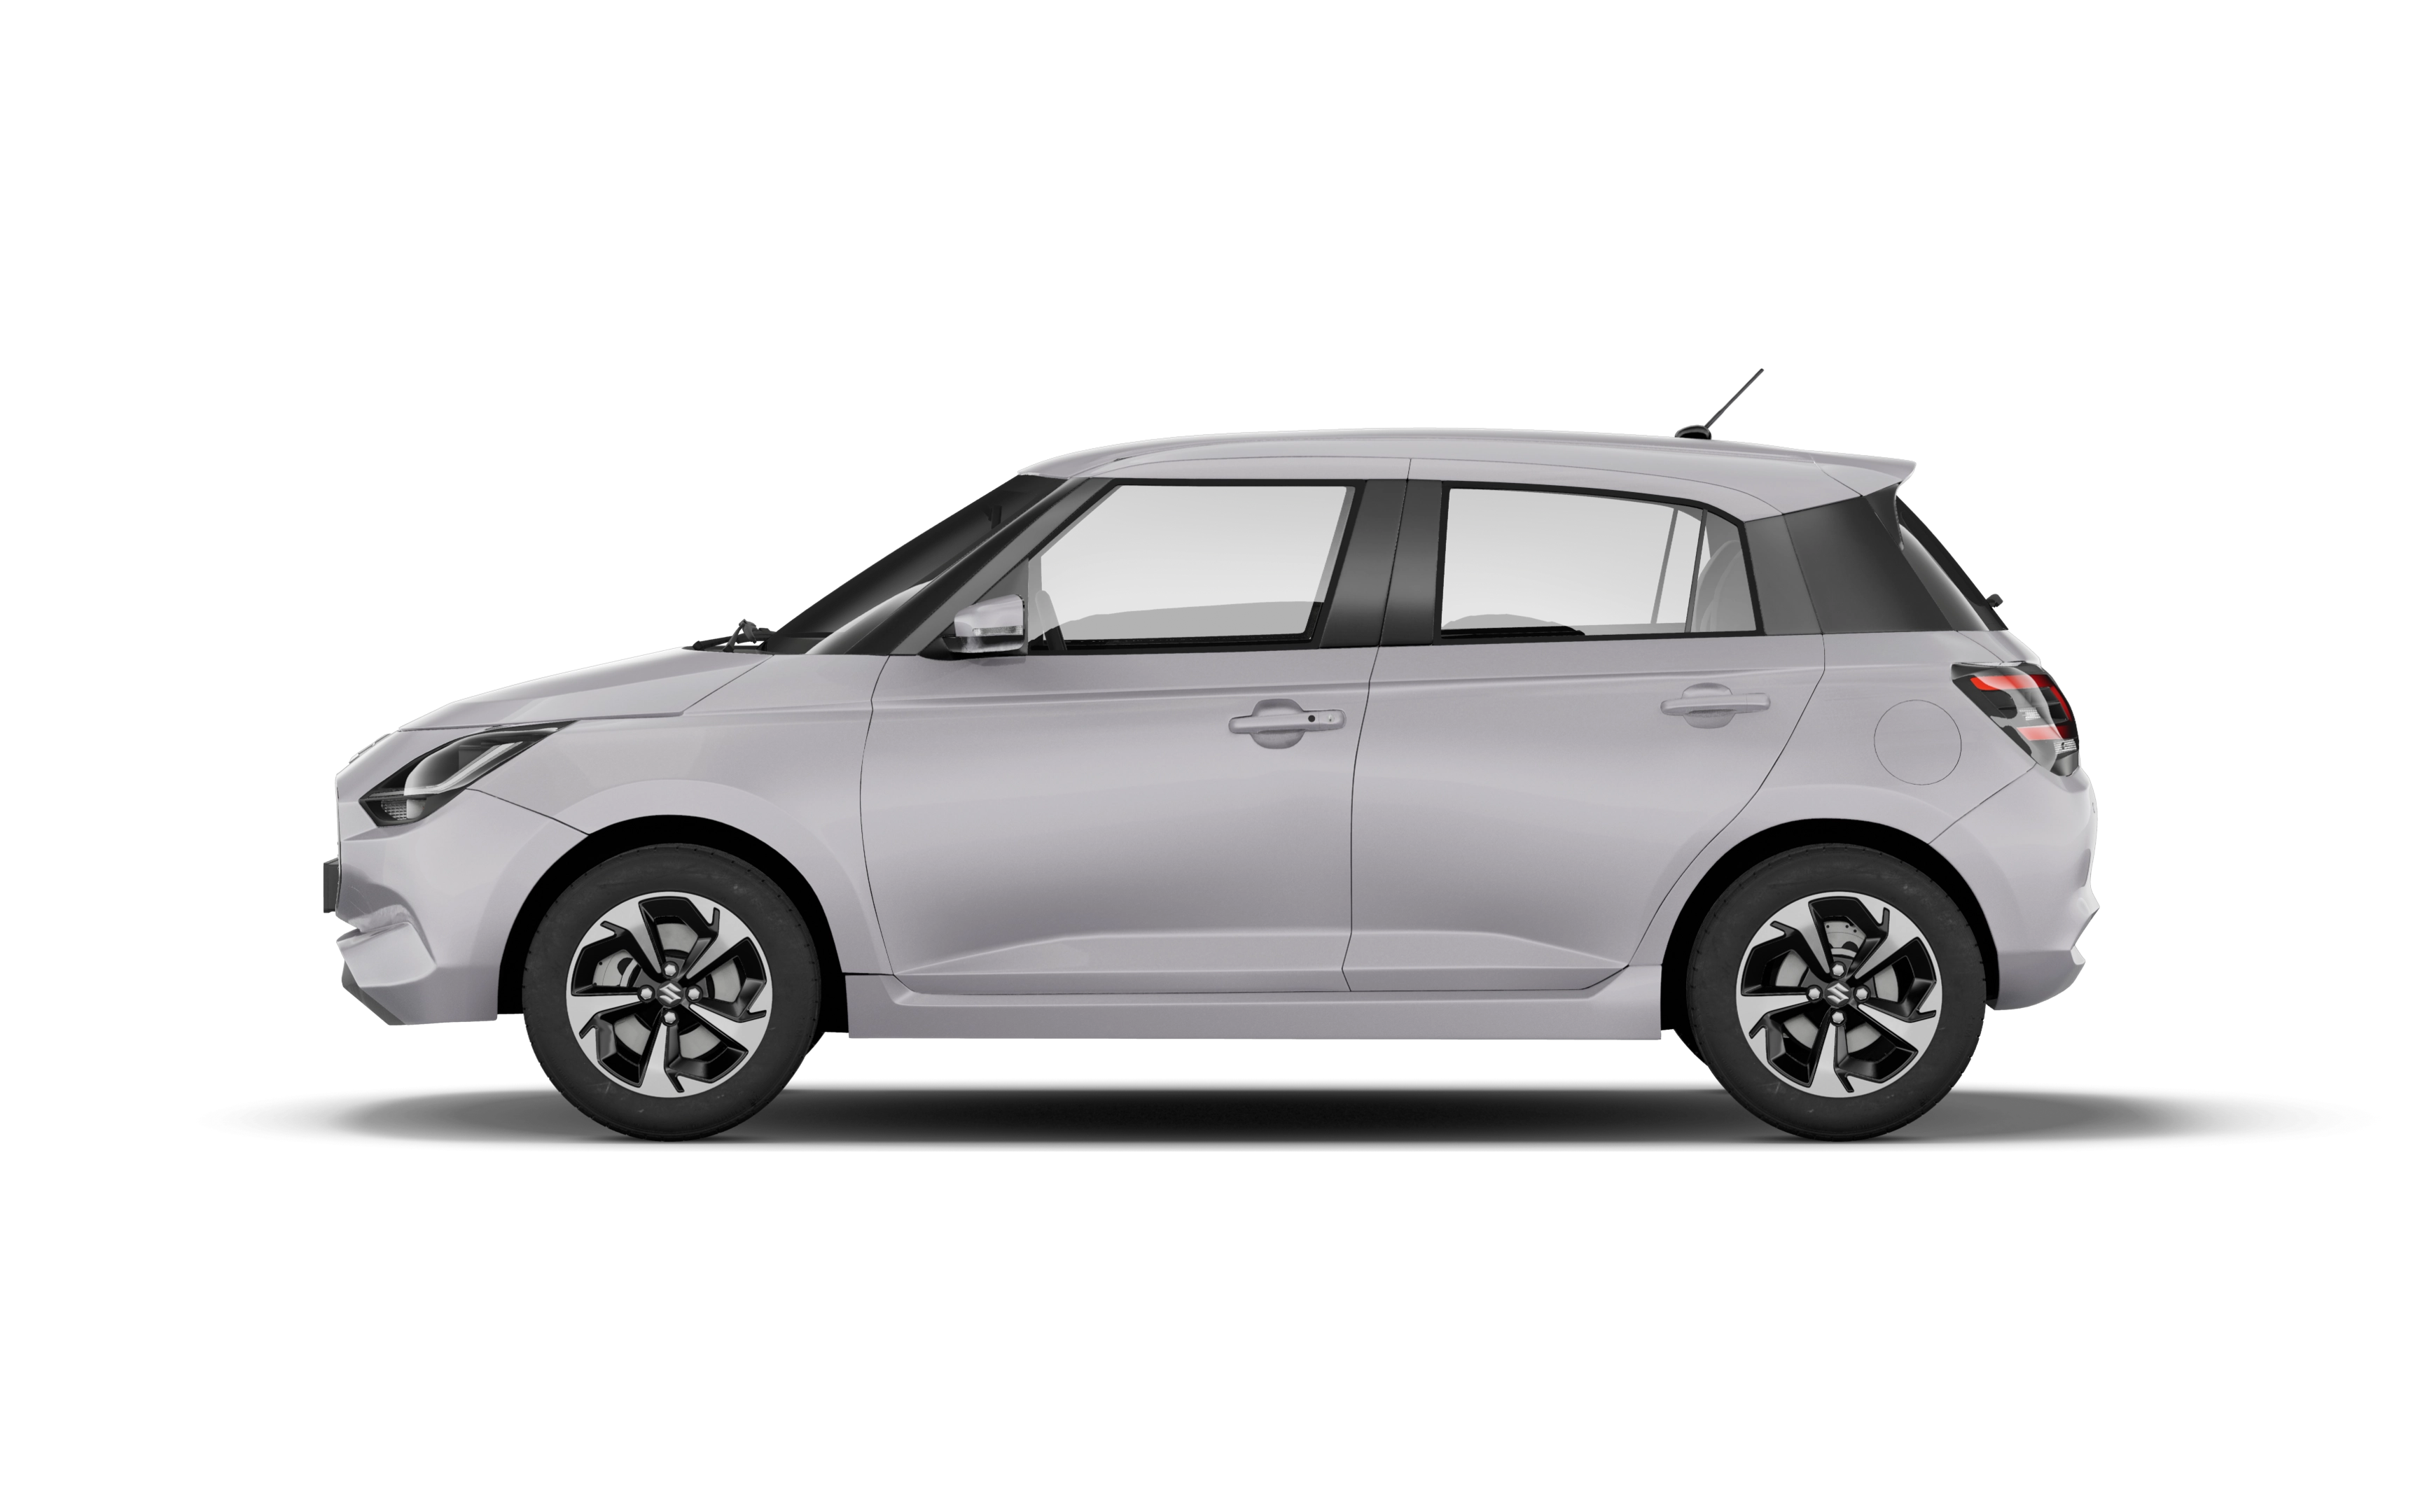 Suzuki swift hatchback 1.2 mild hybrid motion 5 doors cvt